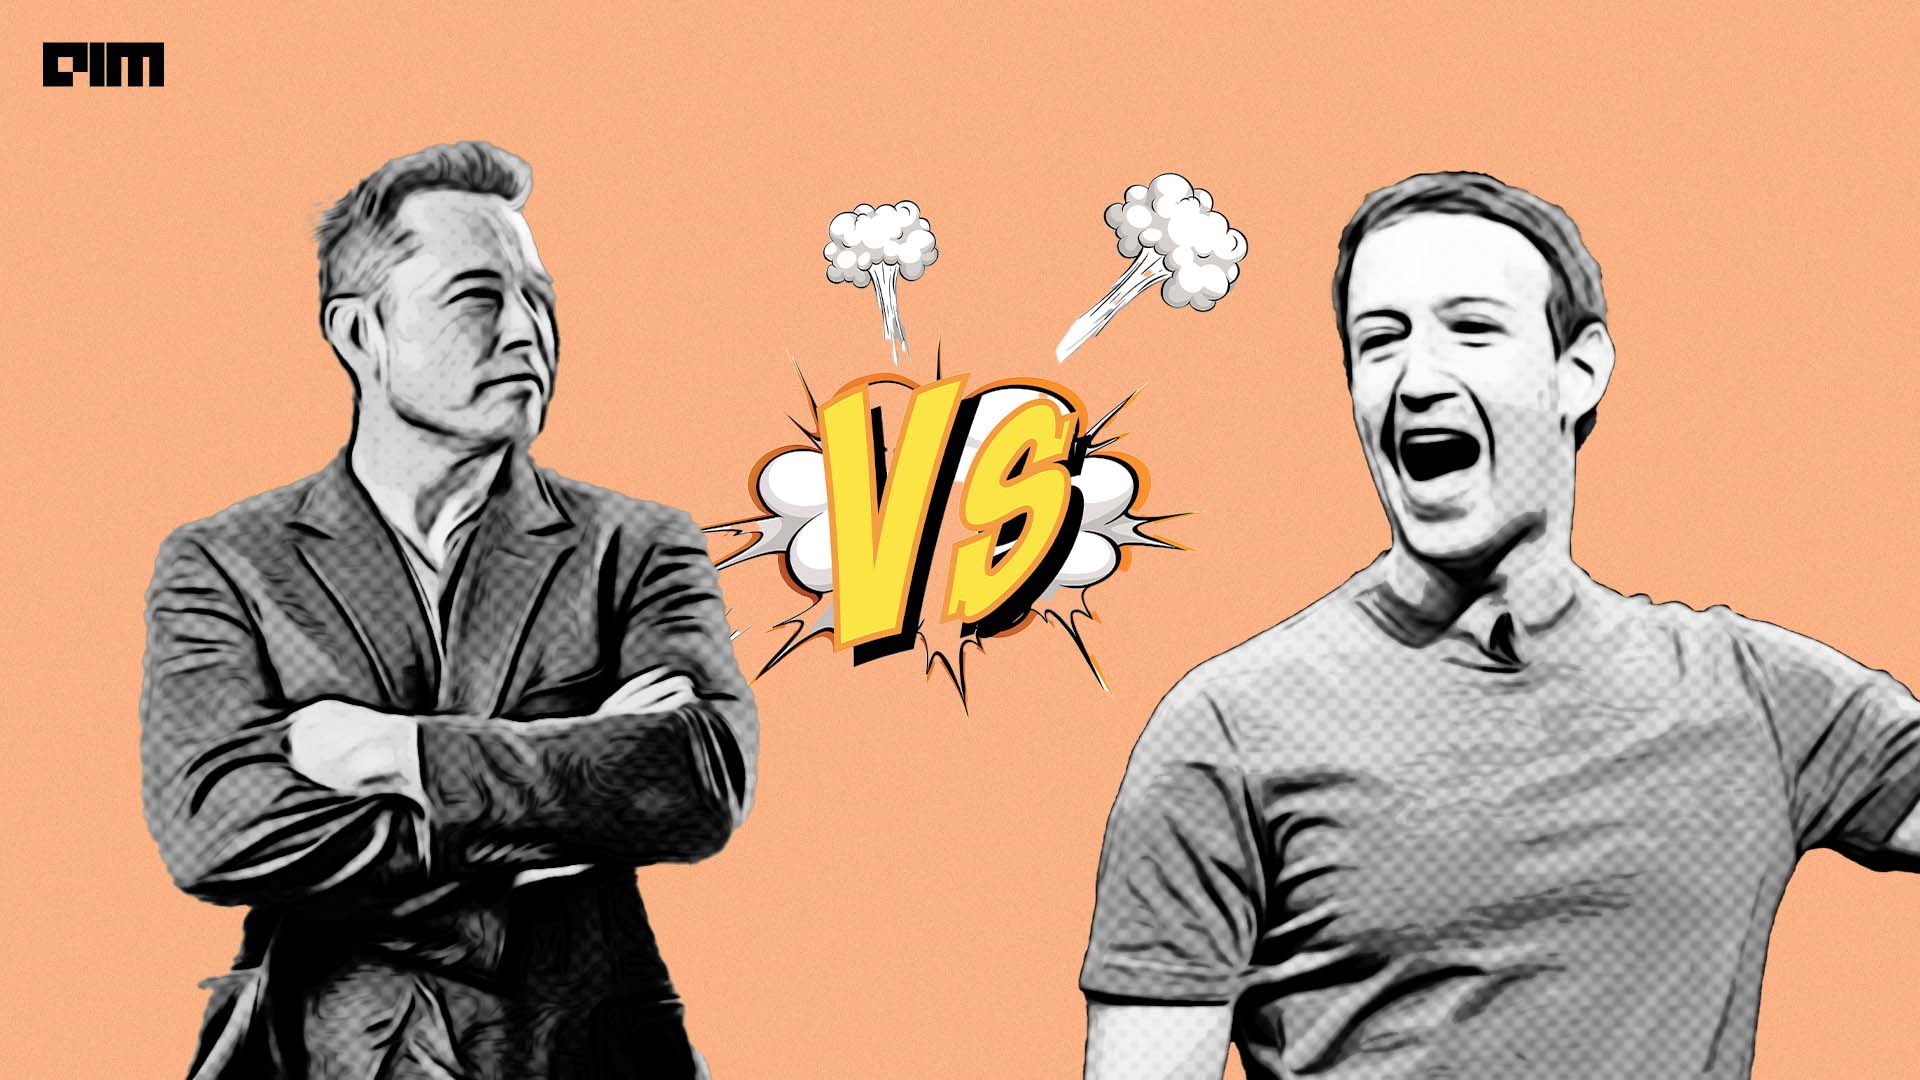 Yapay zekaya göre büyük kafes kapışmasını kim kazanır? Elon Musk Mark mı? Zuckerberg mi?4